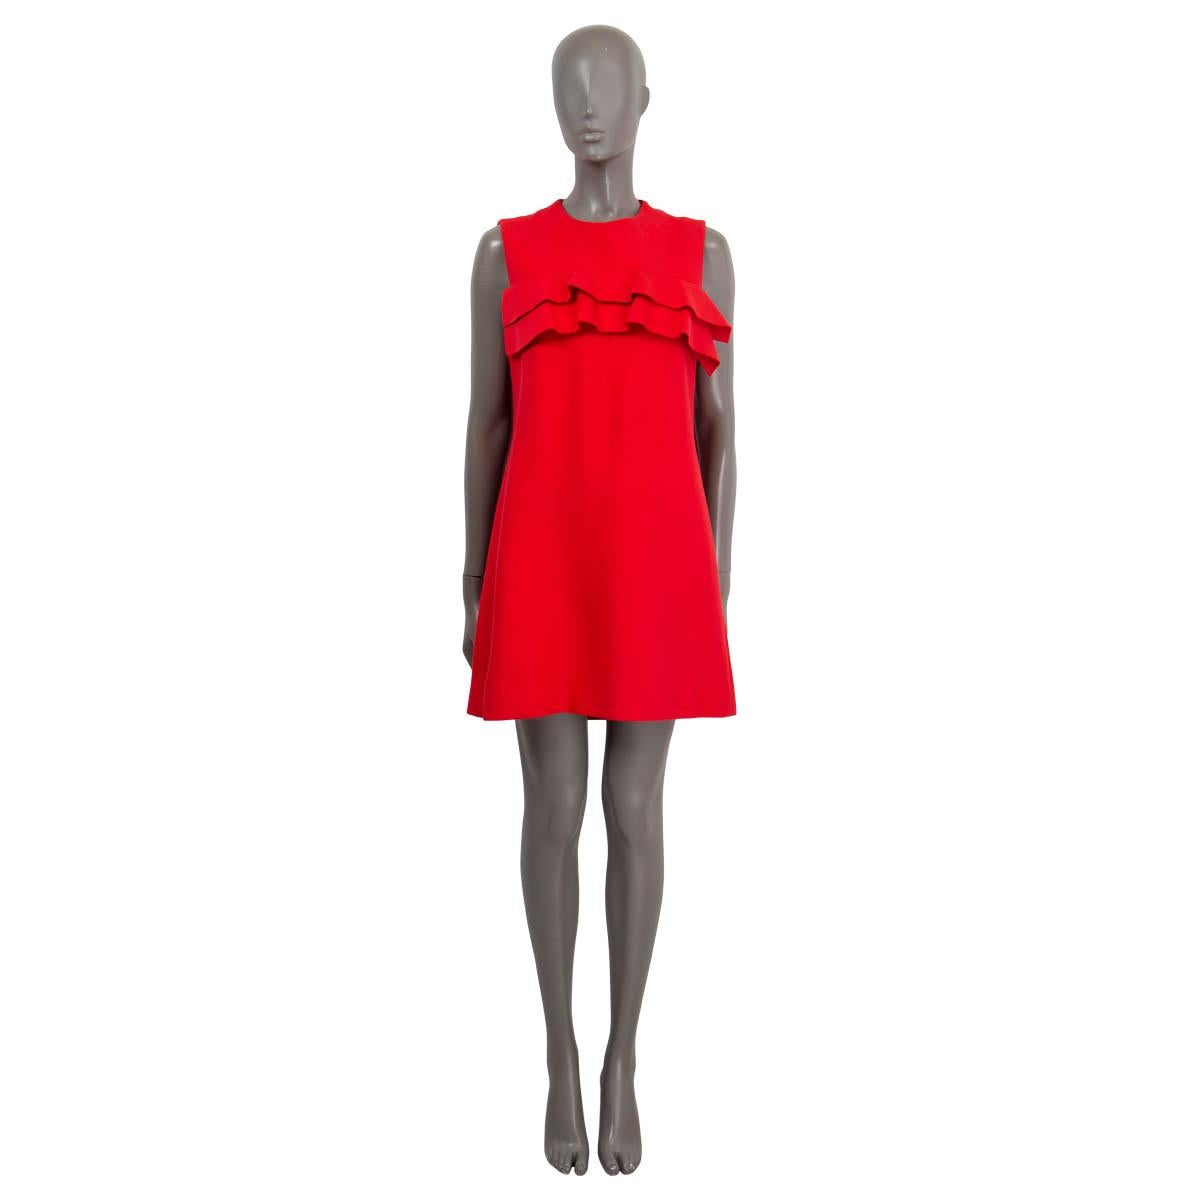 100% authentisches Louis Vuitton ärmelloses Minikleid in Rot (Viskose 76%) und Seide (24%) mit Rüschendetail im Brustbereich. Wird mit einem schwarzen Reißverschluss auf der Rückseite geöffnet und ist mit Seide (100%) gefüttert. Wurde getragen und